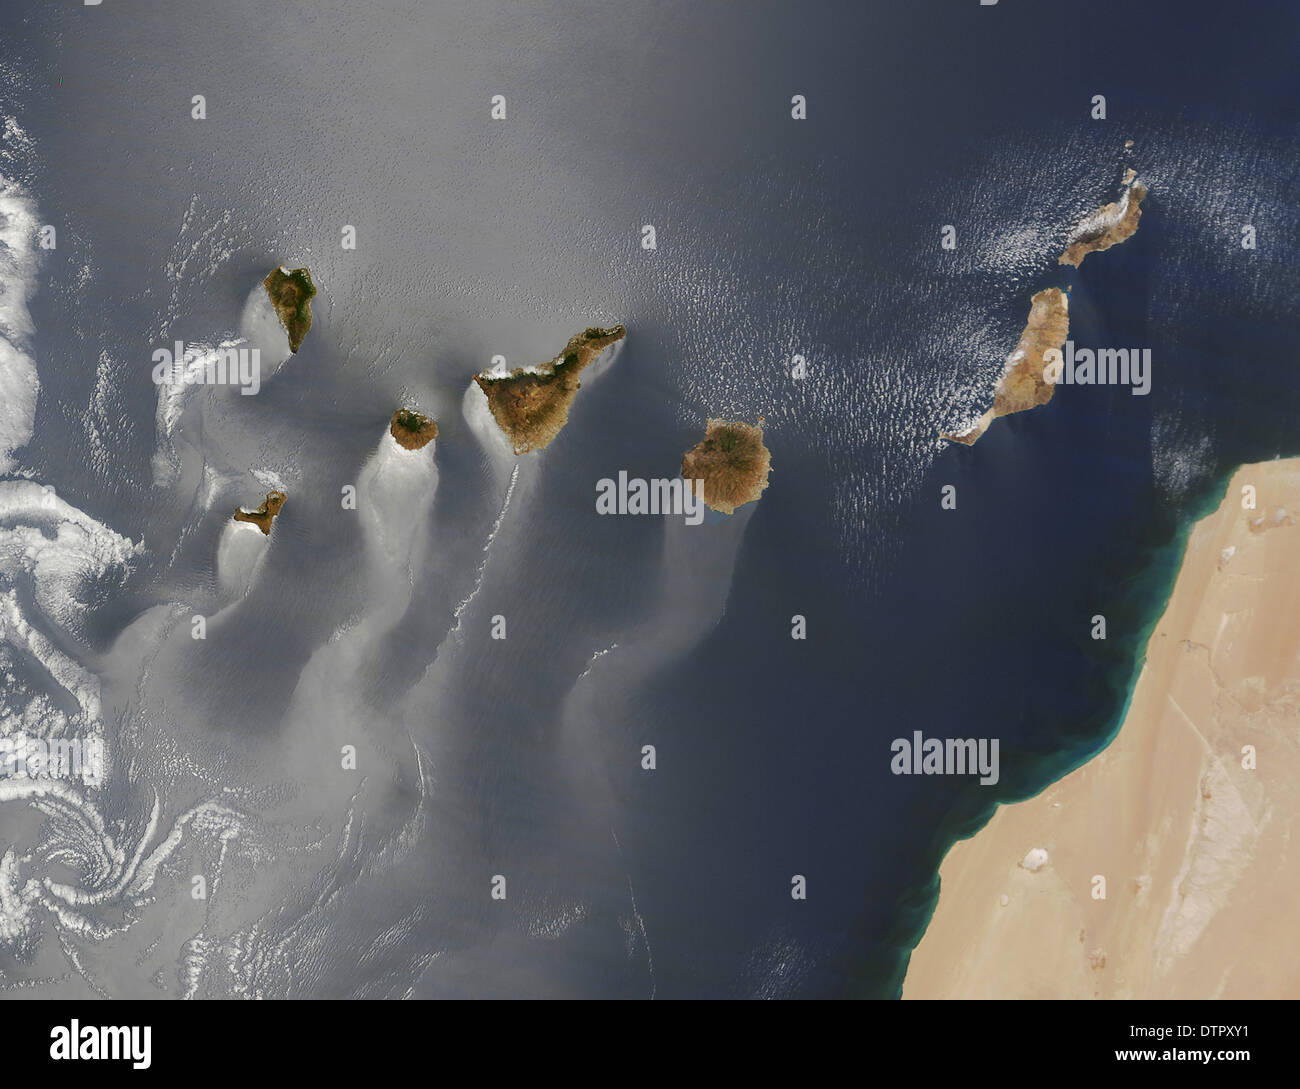 Karmen vortex vent s'écoule autour et entre les îles Canaries est visible par les nuages minces sous le vent en continu Banque D'Images